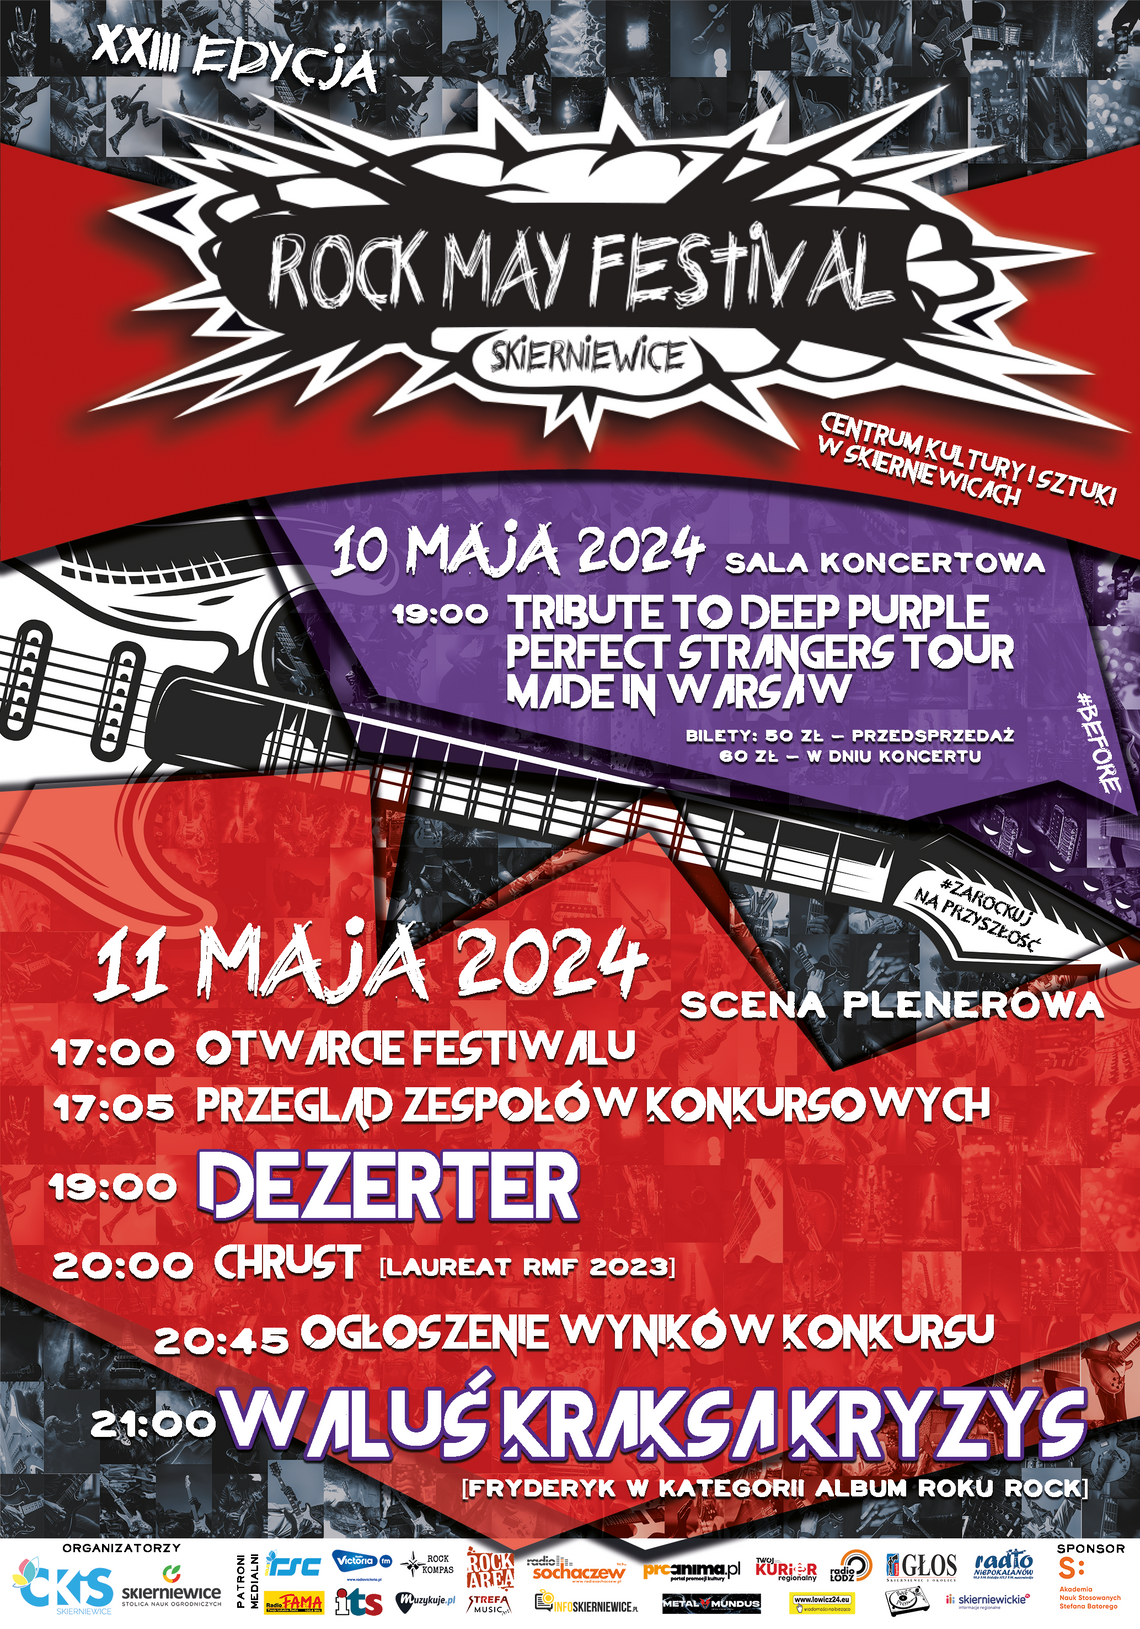 XXIII Rock May Festival - poznaliśmy program imprezy!